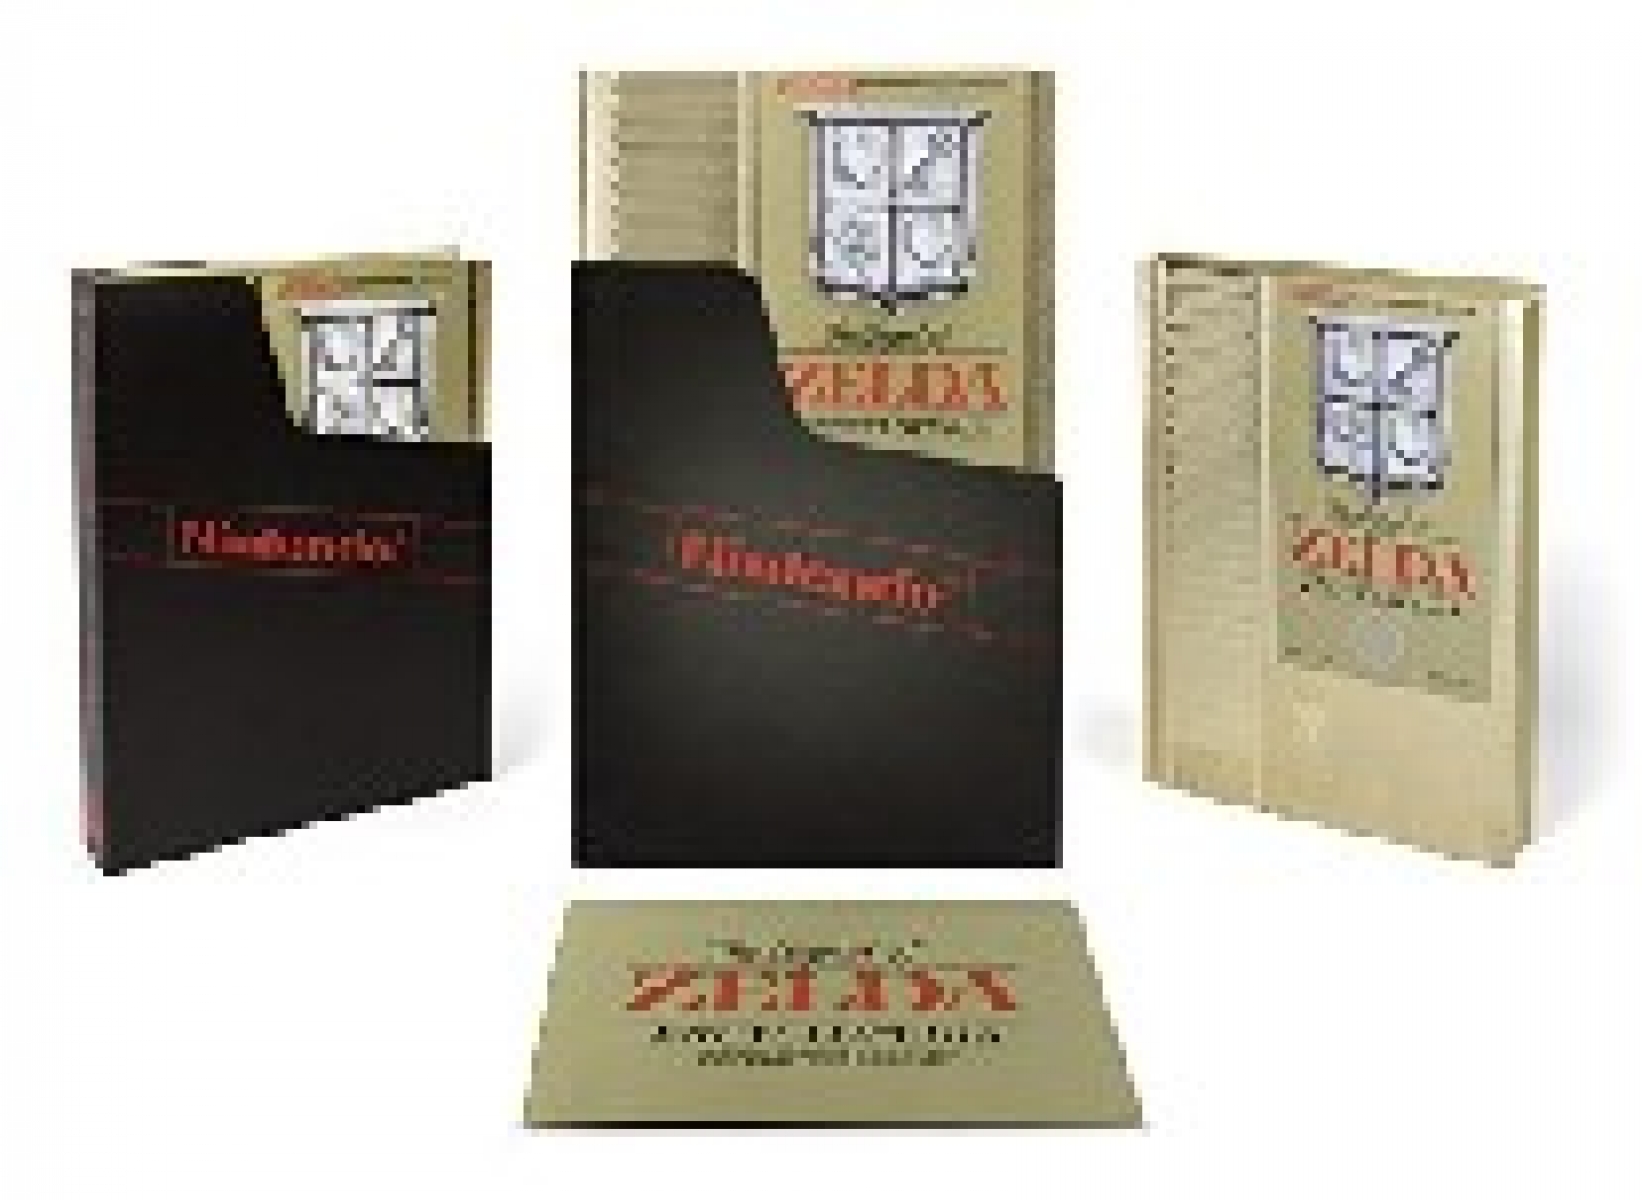 Nintendo The Legend of Zelda Encyclopedia Deluxe Edition 